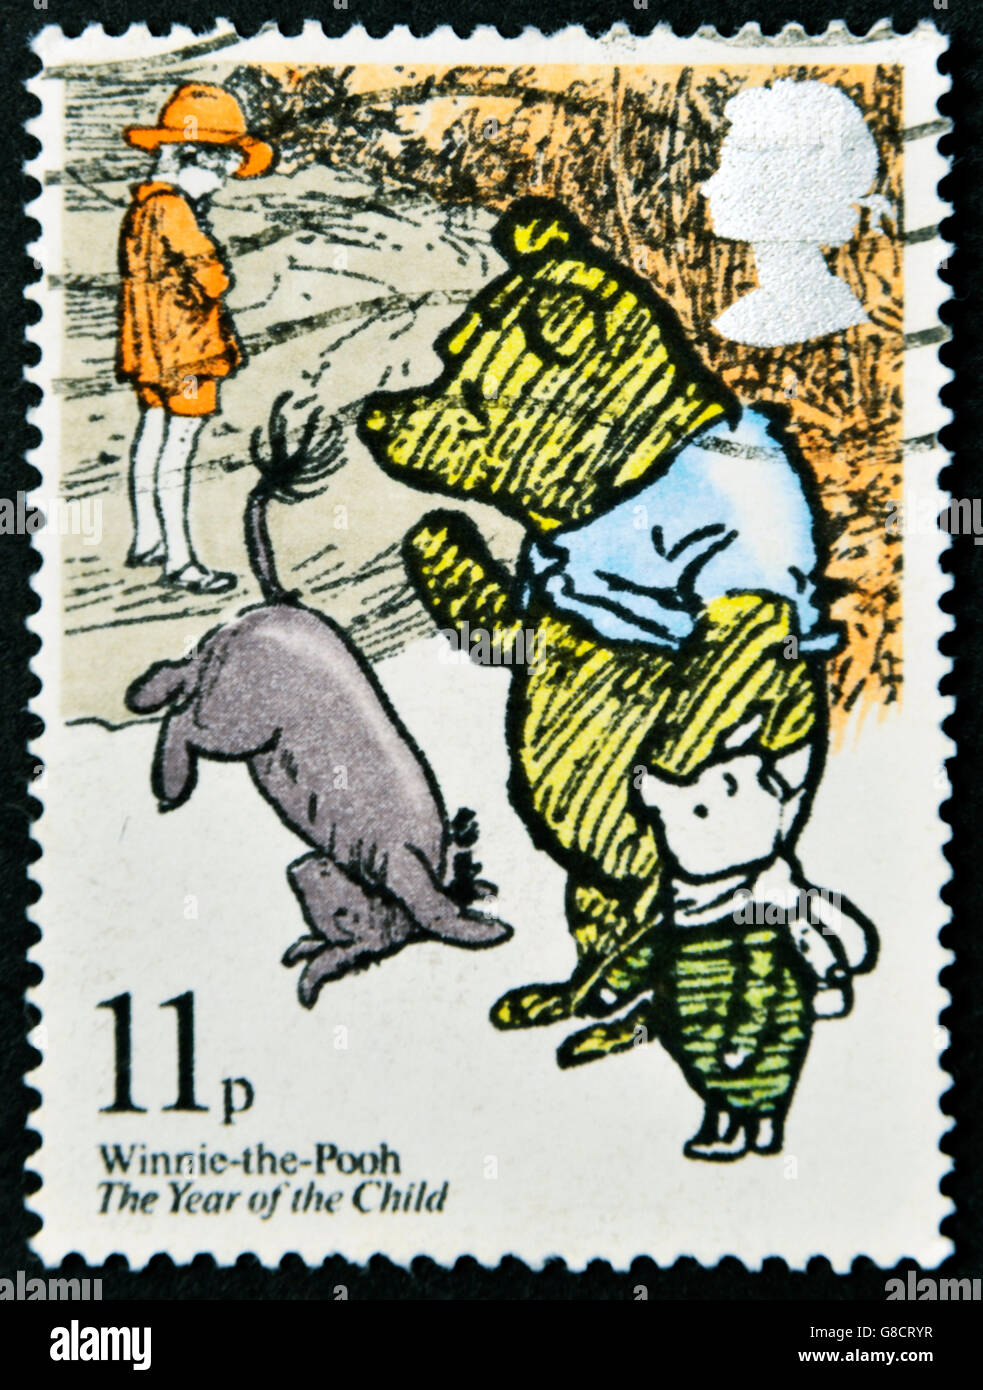 Royaume-uni - circa 1979 : timbre imprimé en Grande-Bretagne montre l'illustration d'un livre pour enfants 'Winnie the Pooh' , circ Banque D'Images